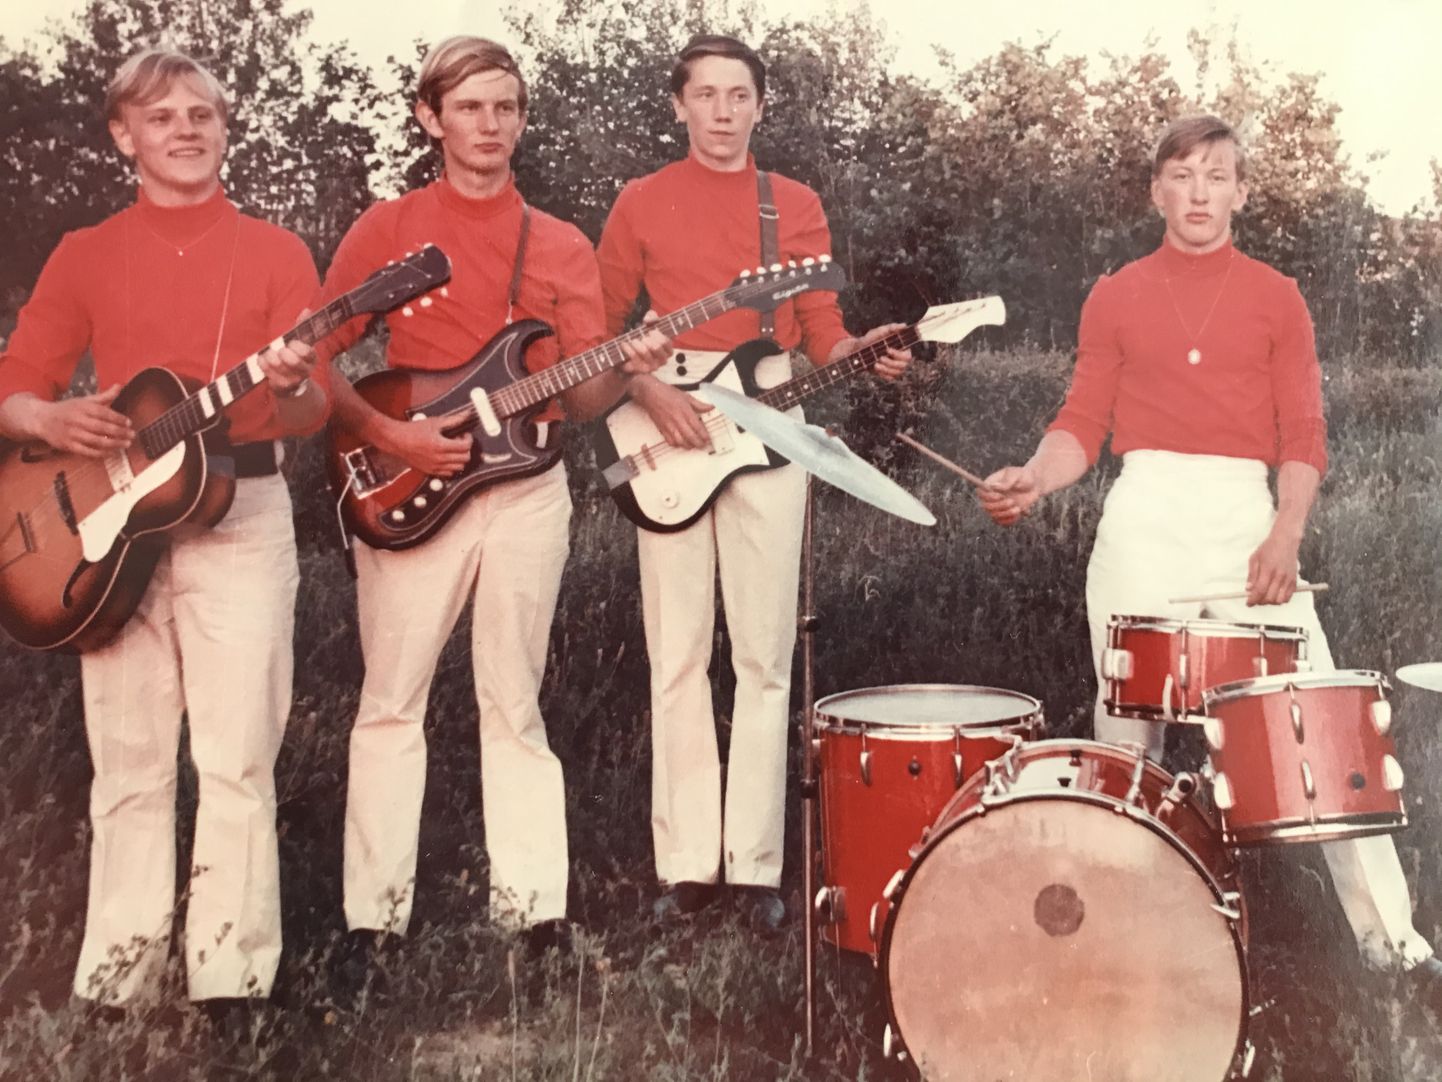 LÕPUPIDU: Bändi liikmed (vasakult) Elmar Sarapik, Uljas Peeters, Tarmo Kask ja Rein Lember 1970. aasta juunis Leisi vana koolimaja juures. Elmaril on Tšehhi päritolu kõlakastiga kitarr Lignatone, Uljasel Tõnu Grepile kuulunud elektrikitarr, Tarmol aga linnapoiste käest ostetud isetehtud bass. Koosseis on Reinu rätsepast isa õmmeldud pükstes, mille juurde kombineeriti punased sviitrid.